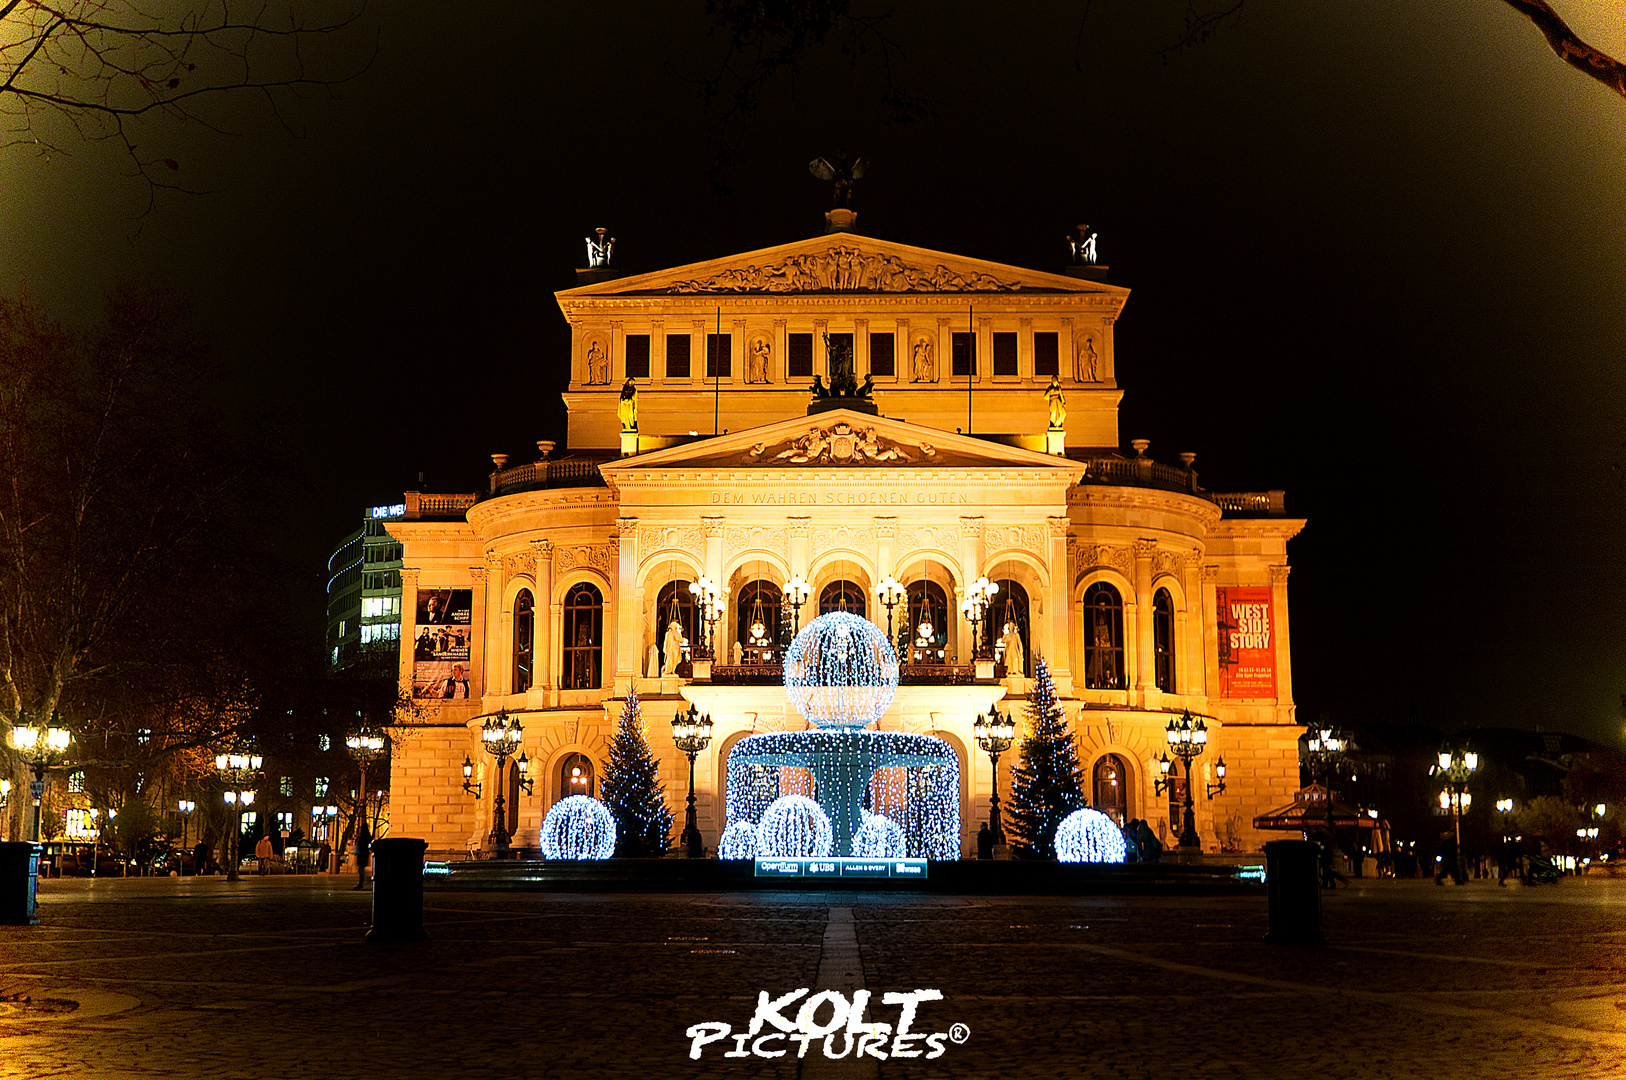 Alte Oper - Frankfurt